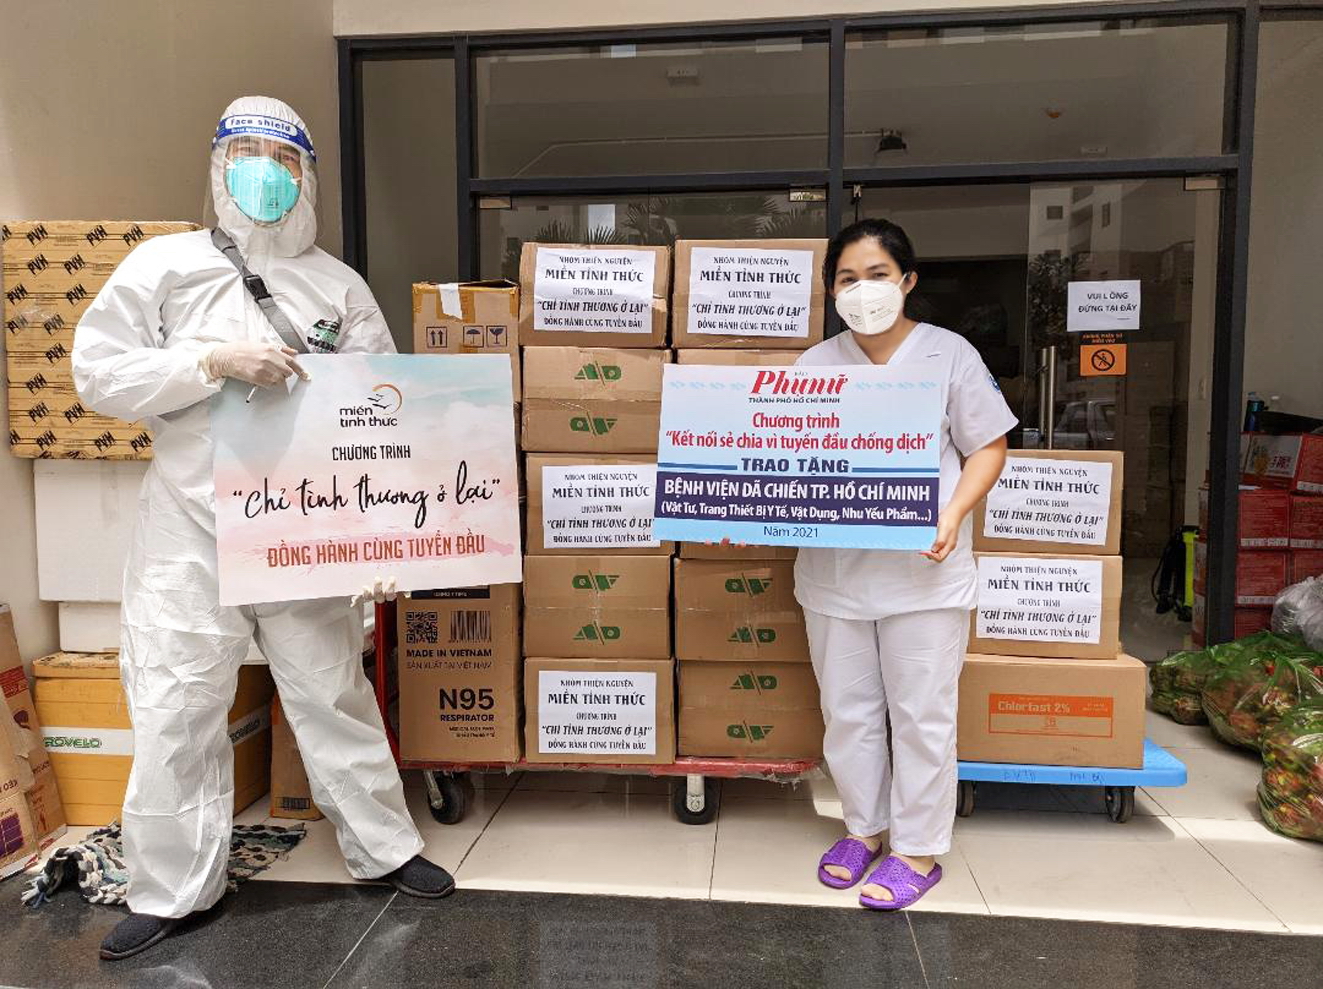 Báo Phụ Nữ TP.HCM và nhóm thiện nguyện Miền tỉnh thức trao tặng quà, trang thiết bị y tế, bảo hộ cho tuyến đầu chống dịch